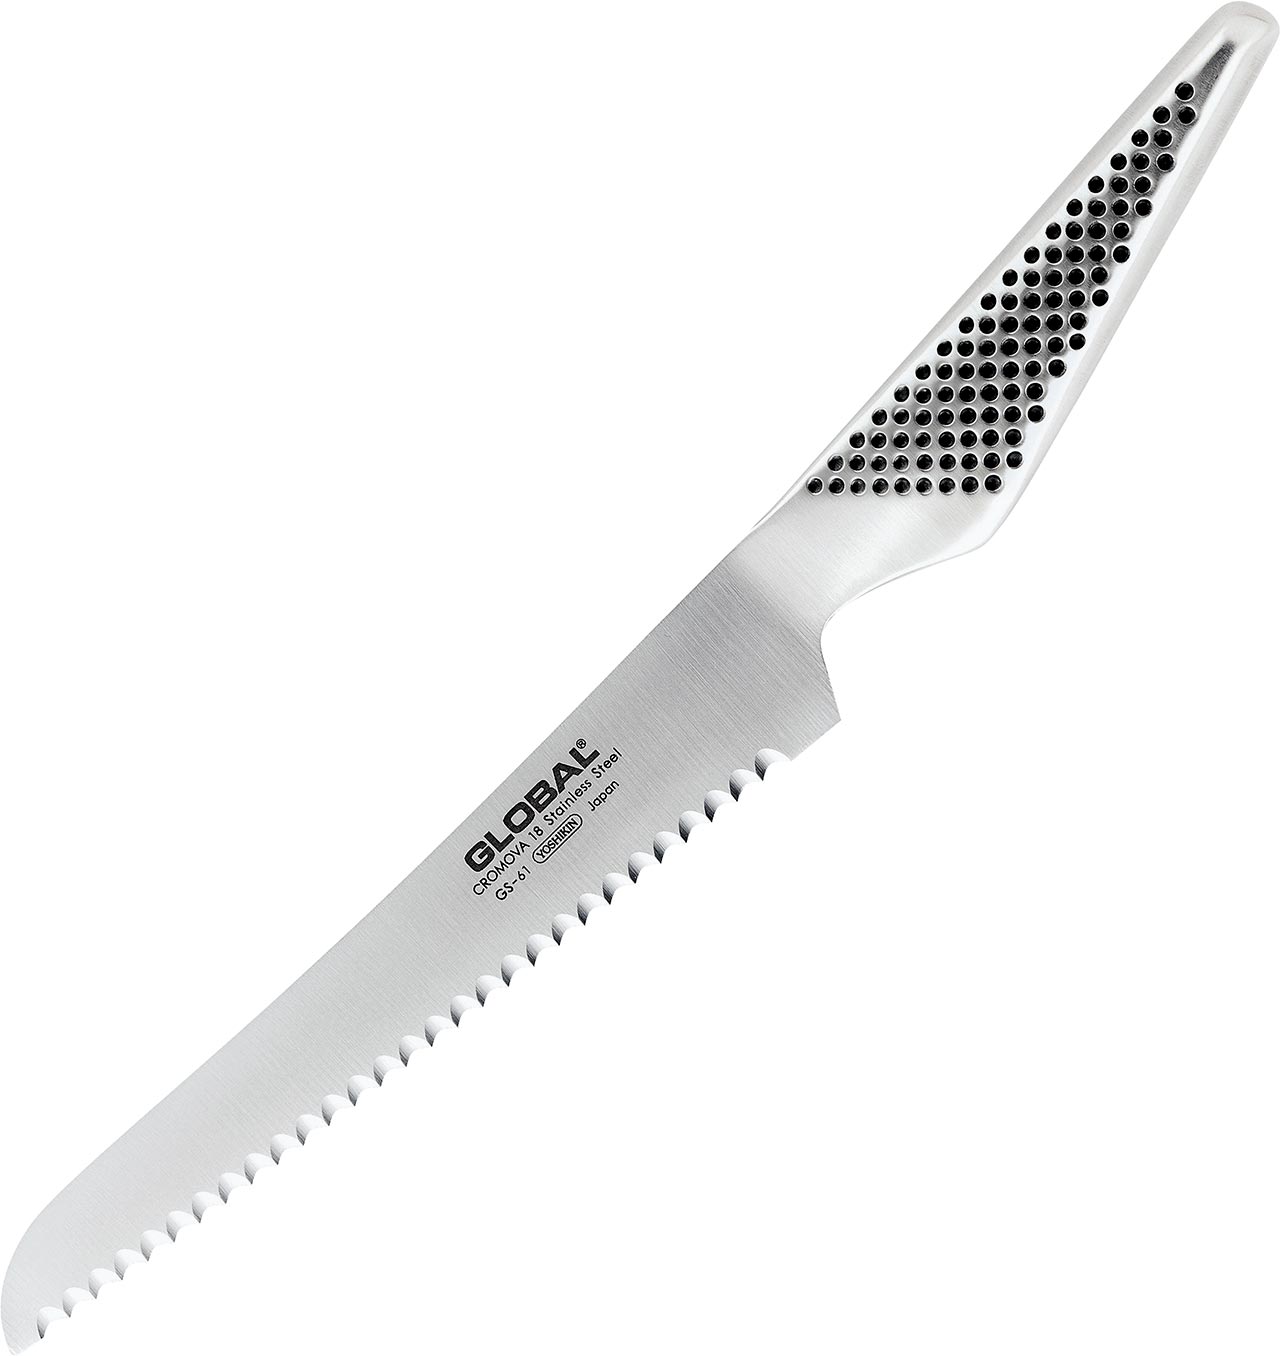 GS-61 Sandwich Knife 16cm